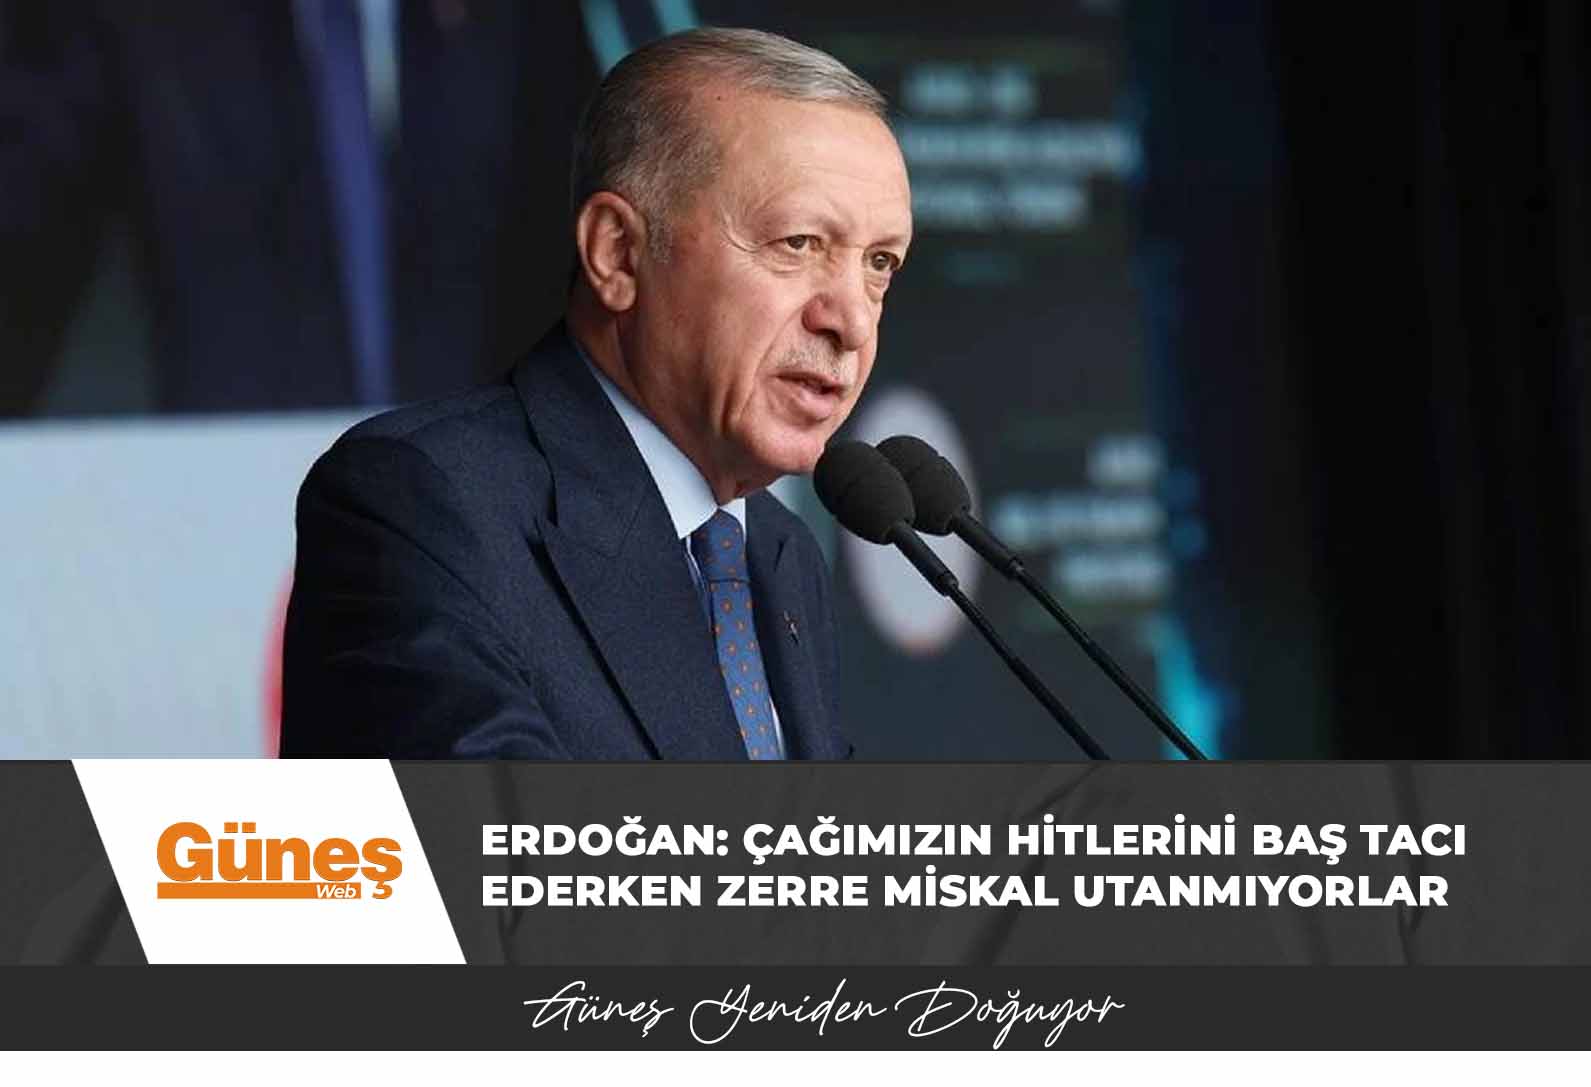 Erdoğan: Çağımızın hitlerini baş tacı ederken zerre miskal utanmıyorlar